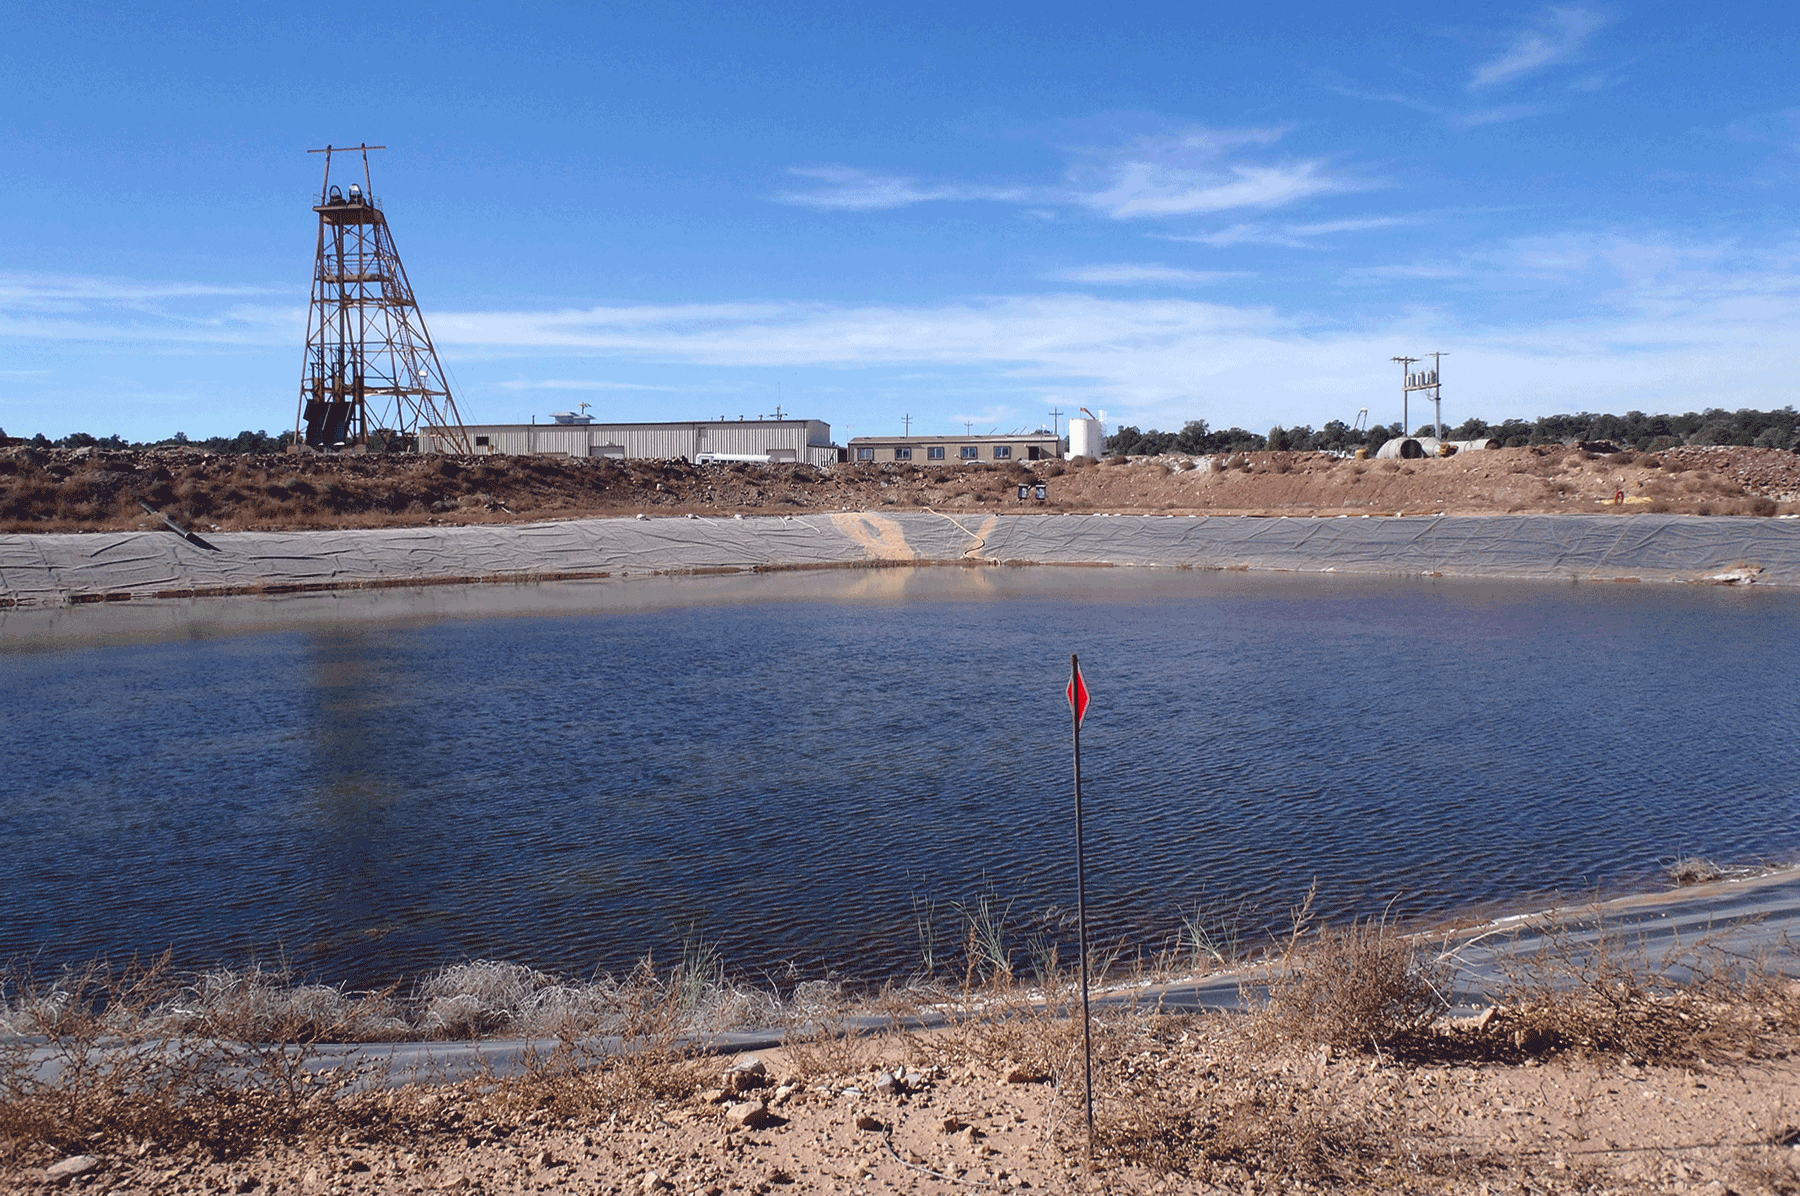  Pinenut mine containement pond 